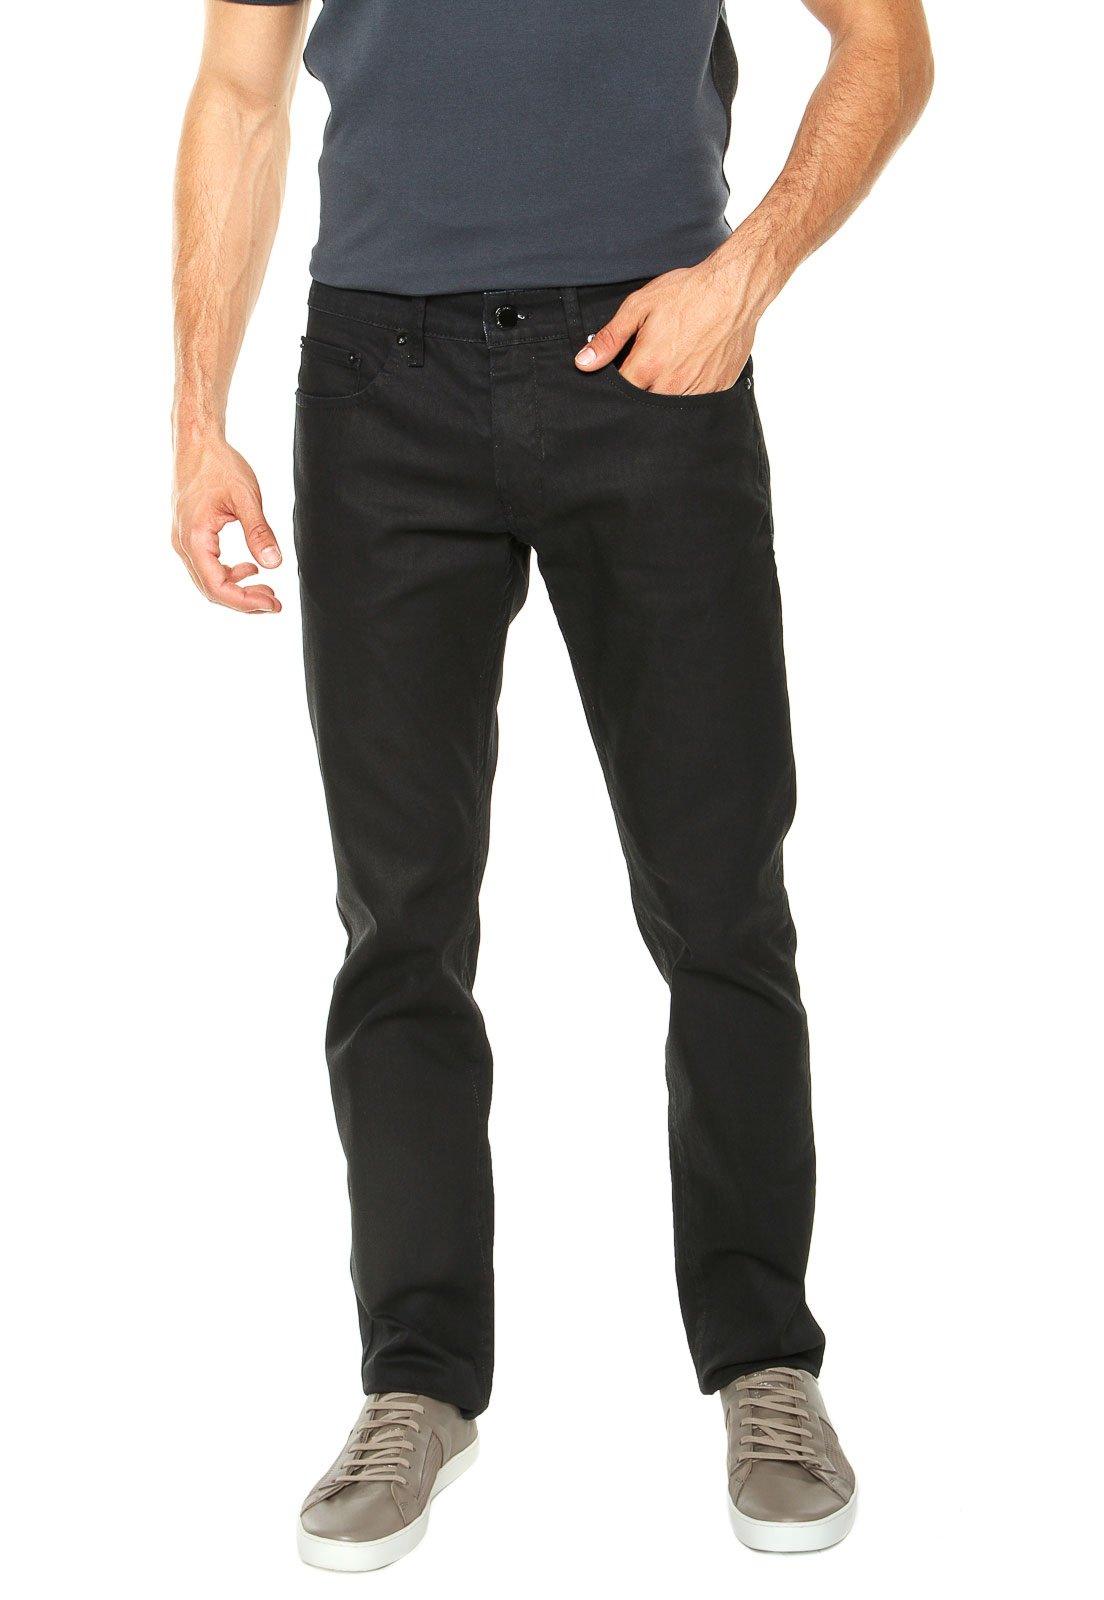 calça masculina preta resinada